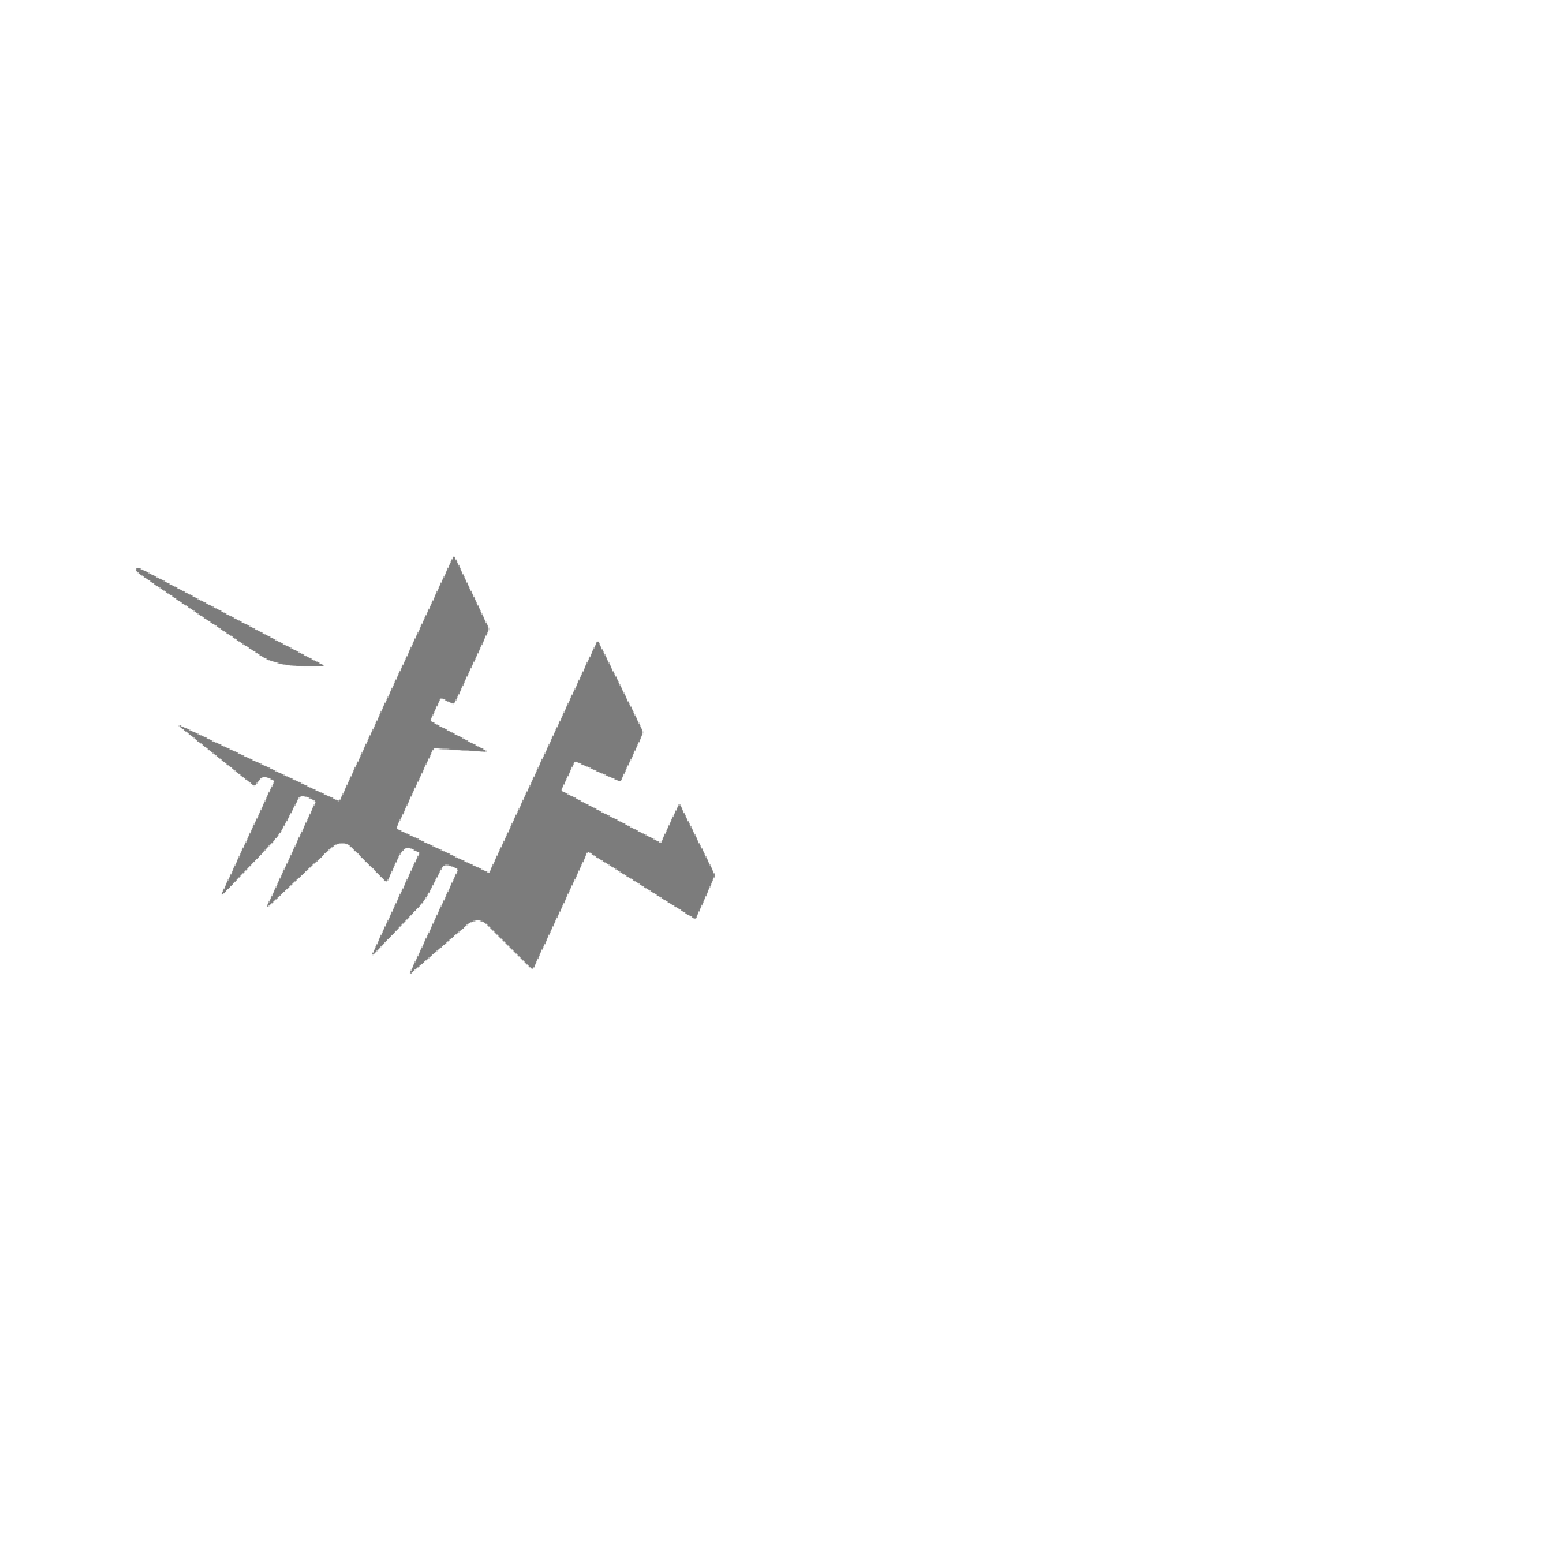 Fondazione Arnaldo Pomodoro